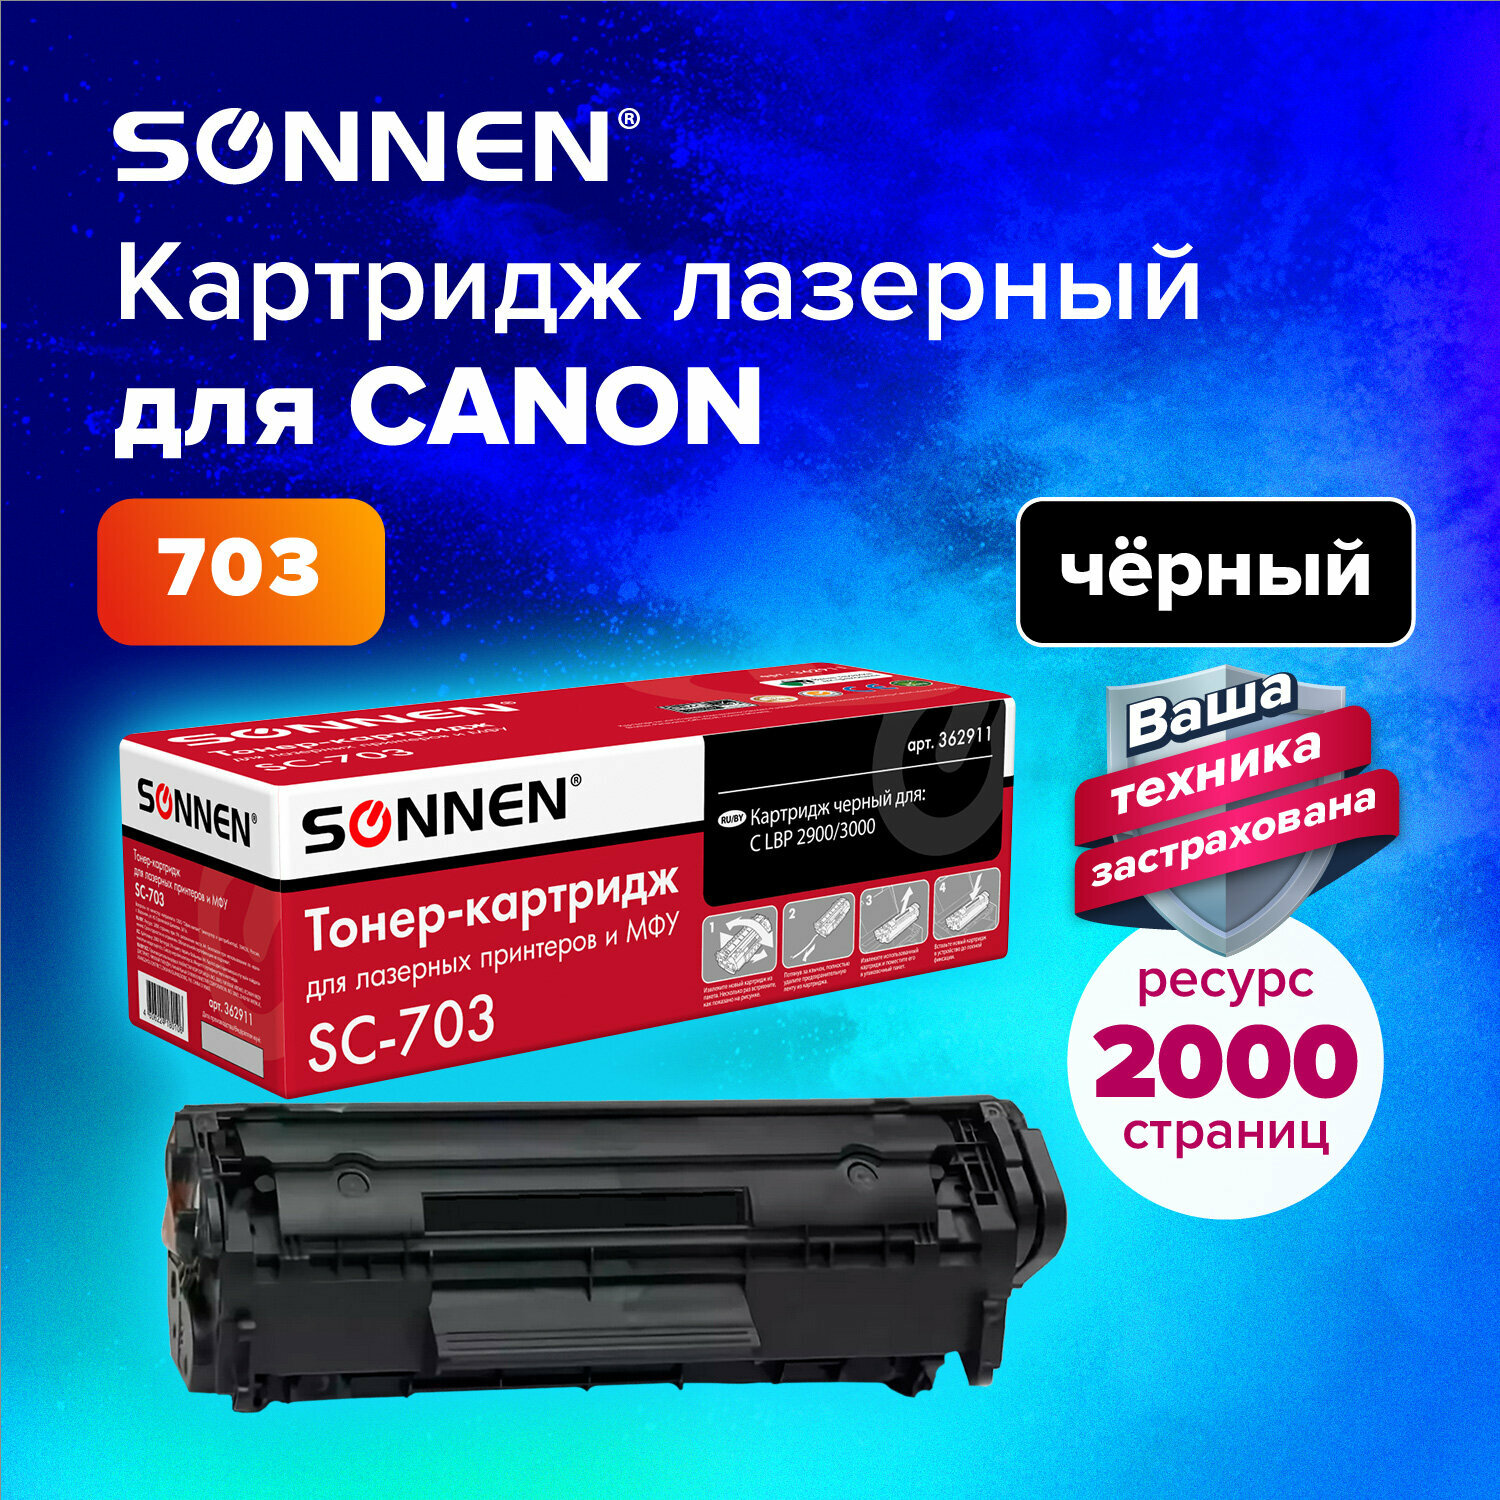 Картридж лазерный SONNEN (SC-703) для CANON LBP-2900/3000, ресурс 2000 стр., 362911 - фото №8